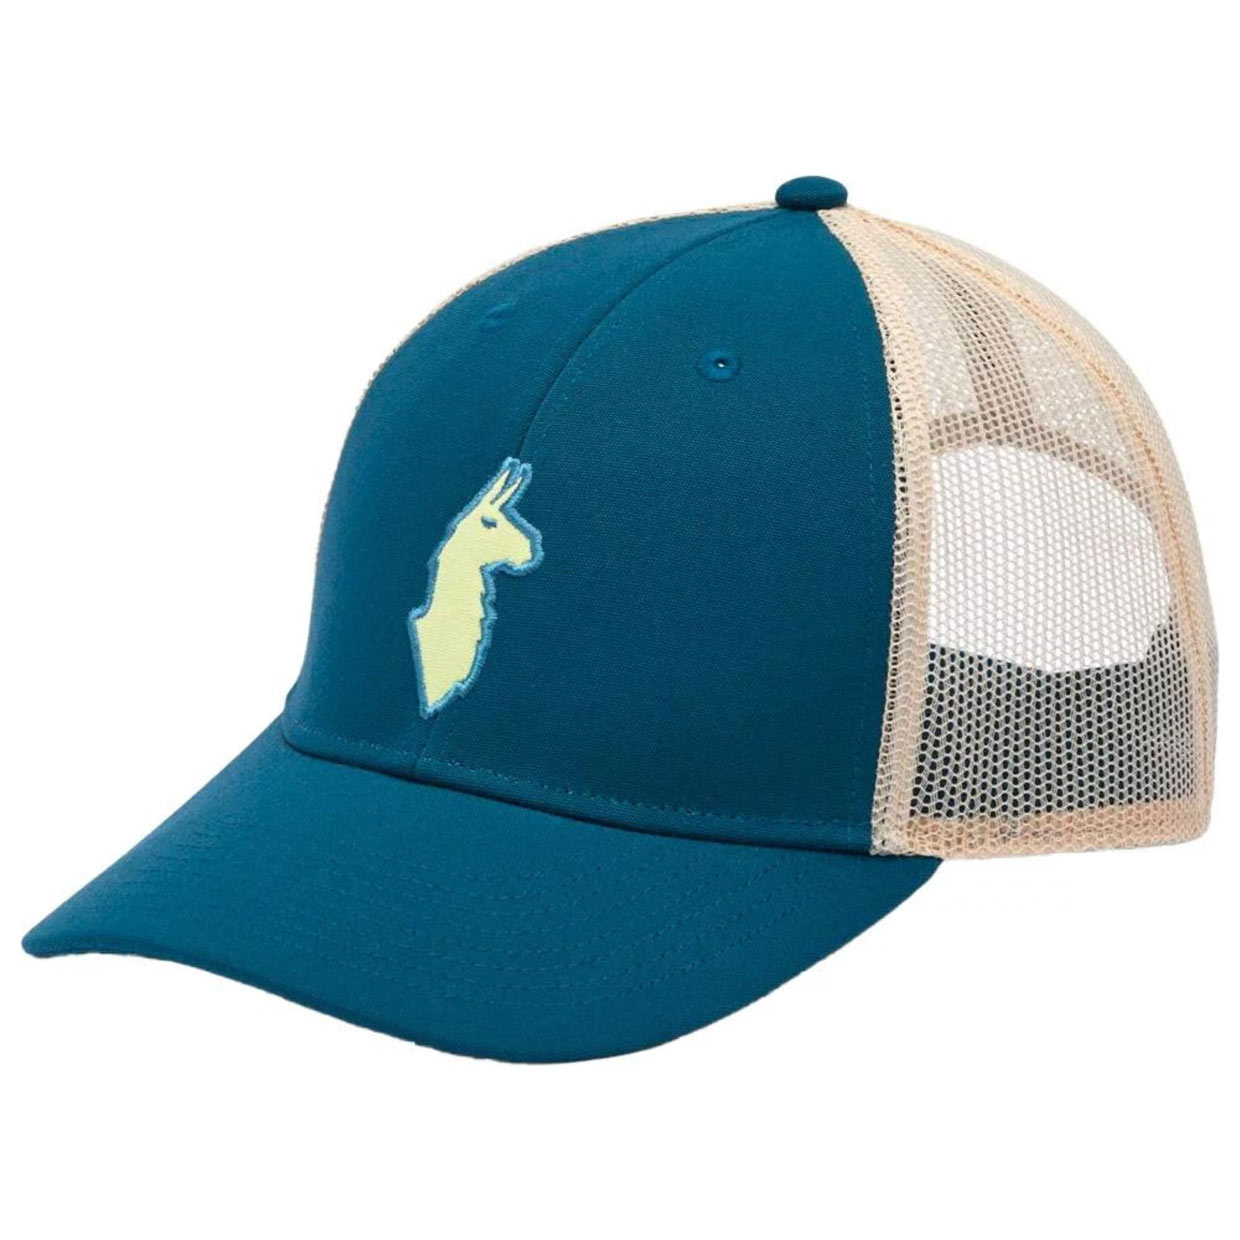 Cap Llama Trucker Hat